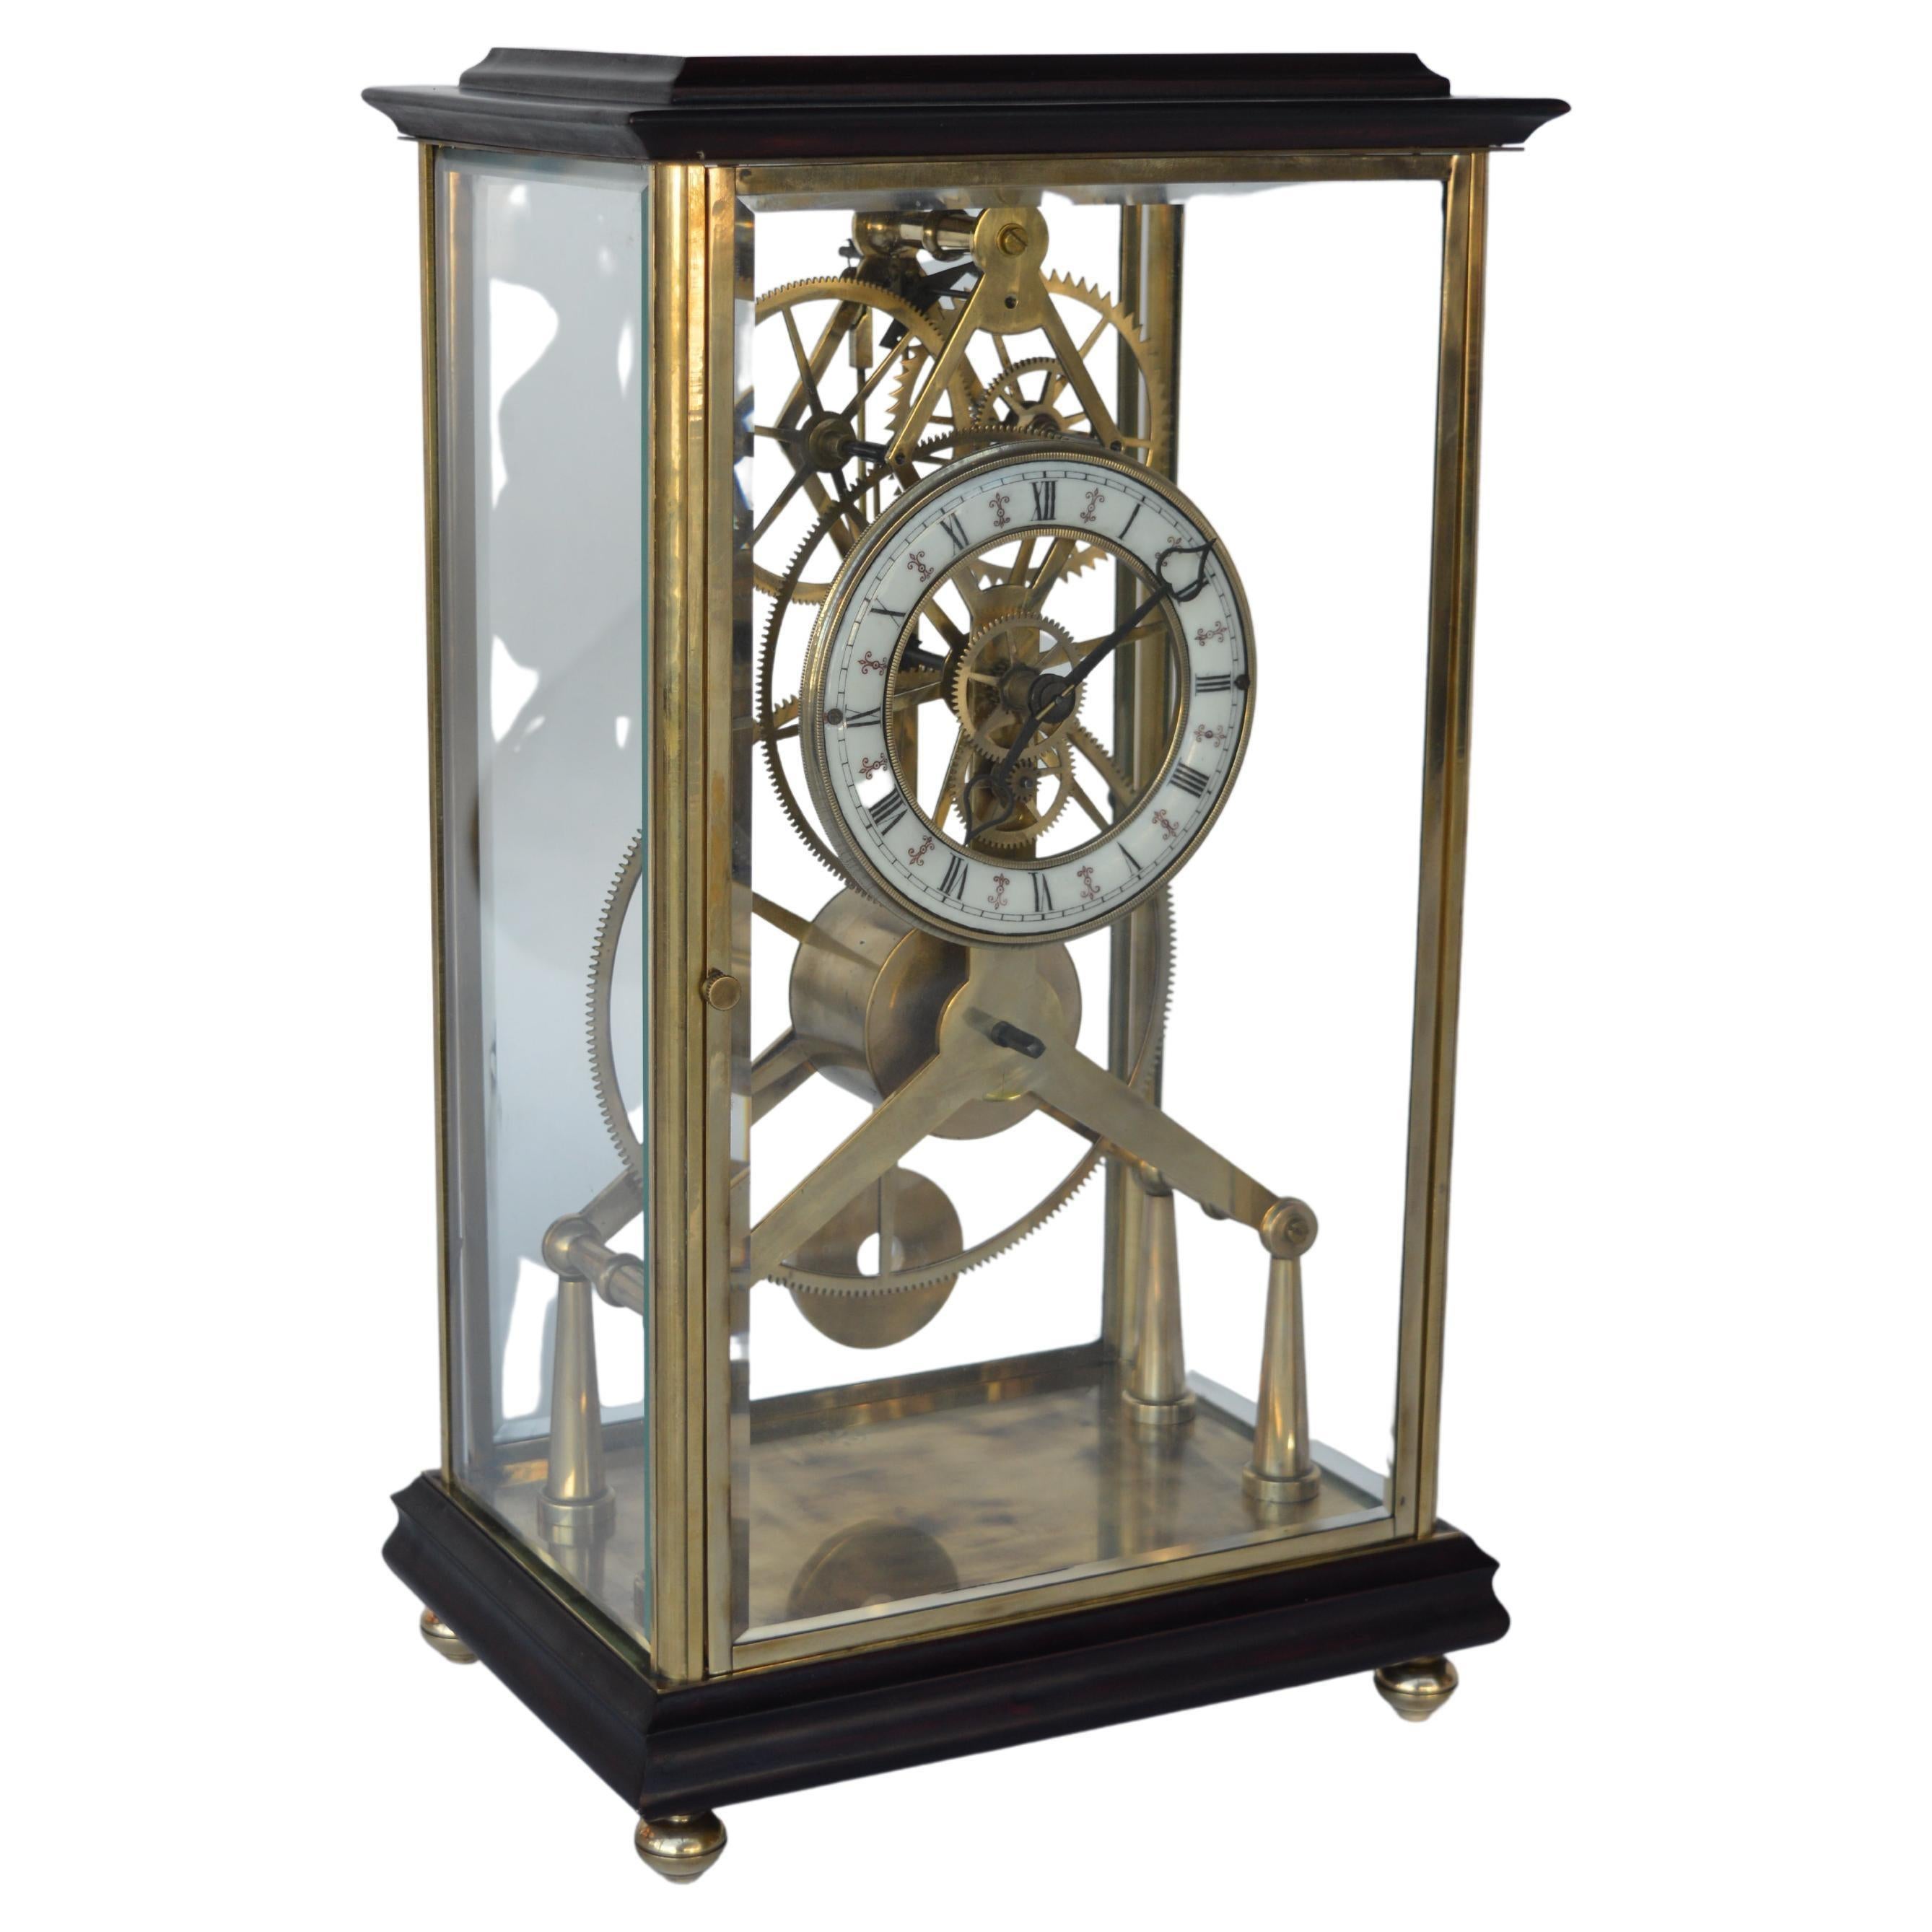 Horloge squelette française de la fin du 19e siècle, estampillée. Fabriqué en bois d'acajou et en laiton. Cadran en porcelaine avec chiffres romains.